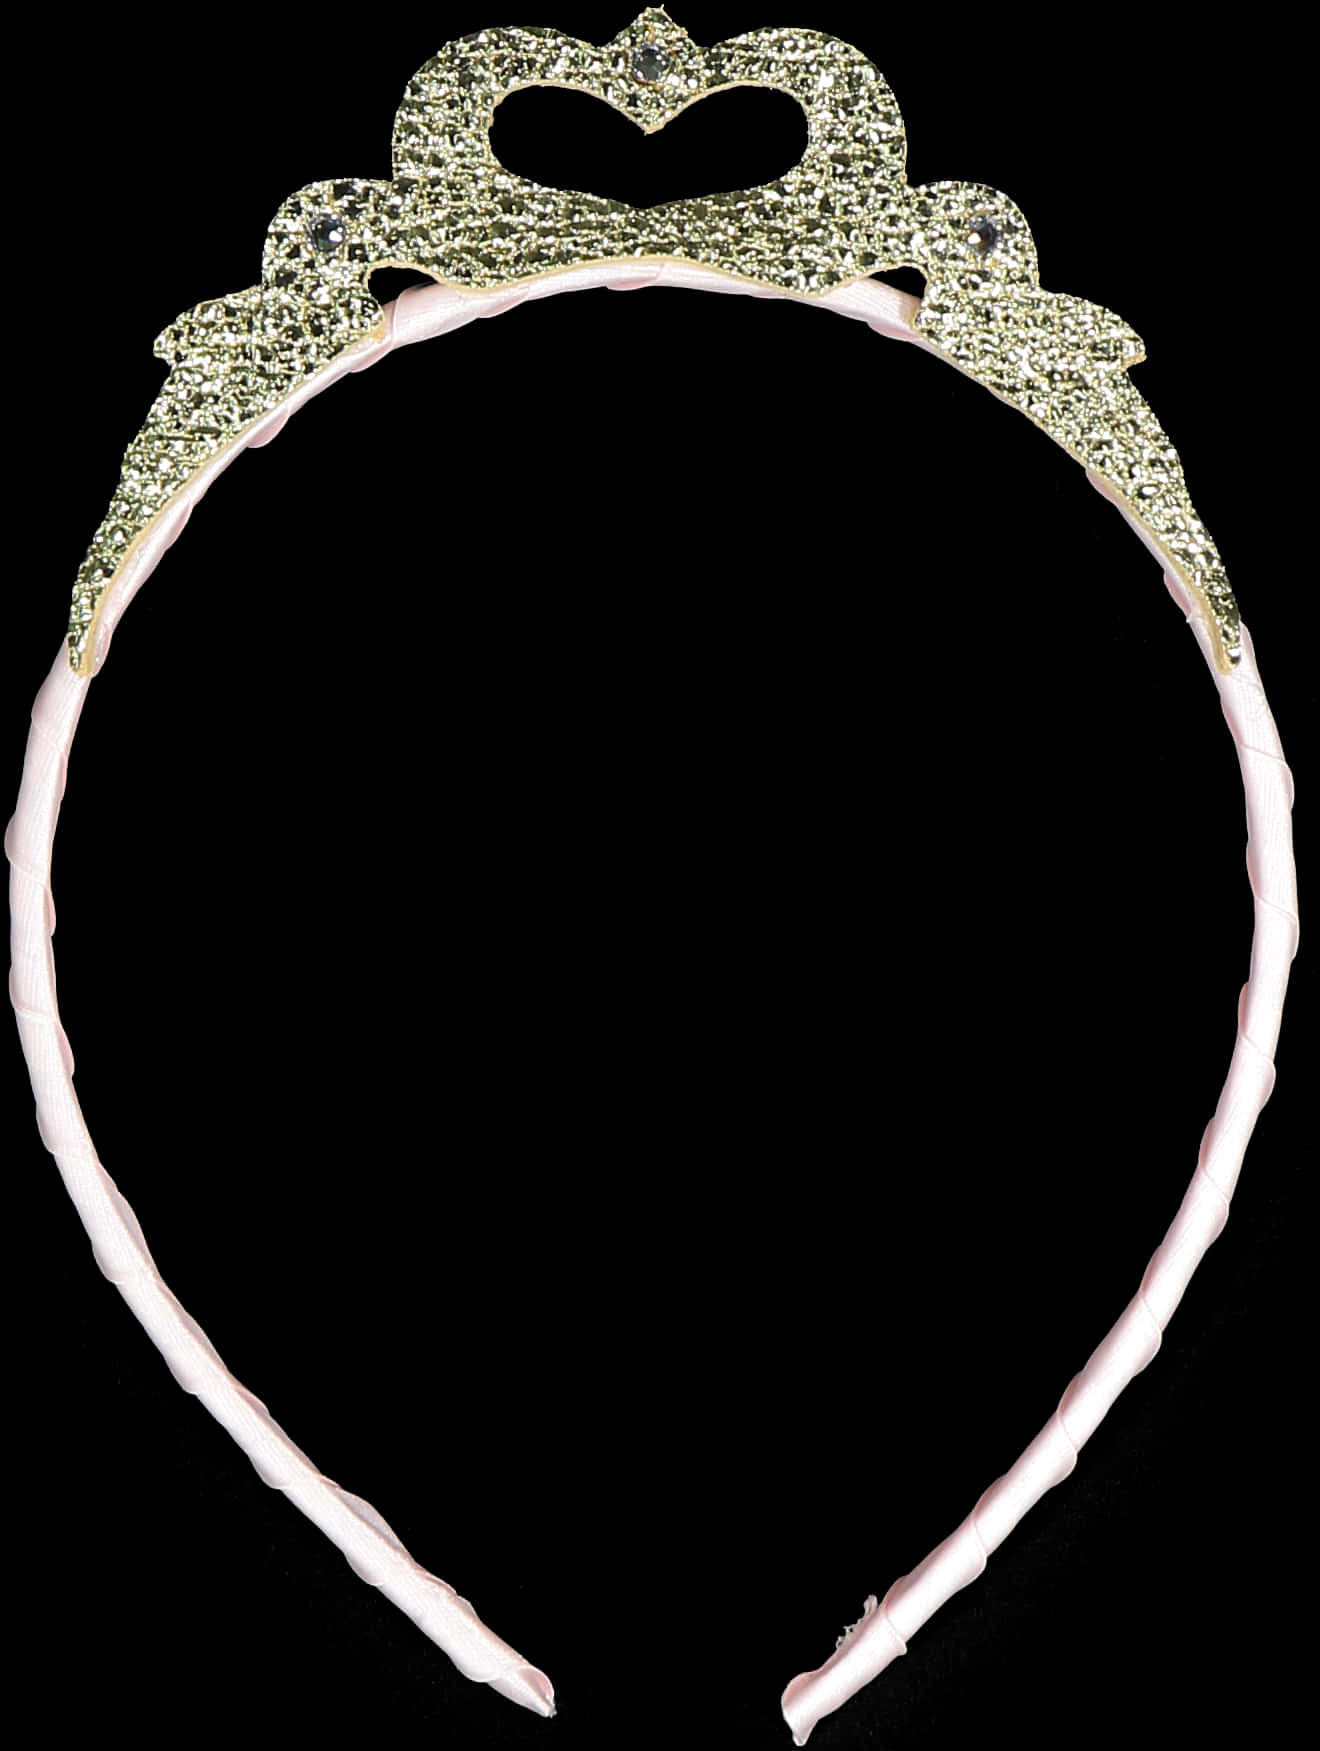 Princess Gold Crown Png - Headpiece, Transparent Png